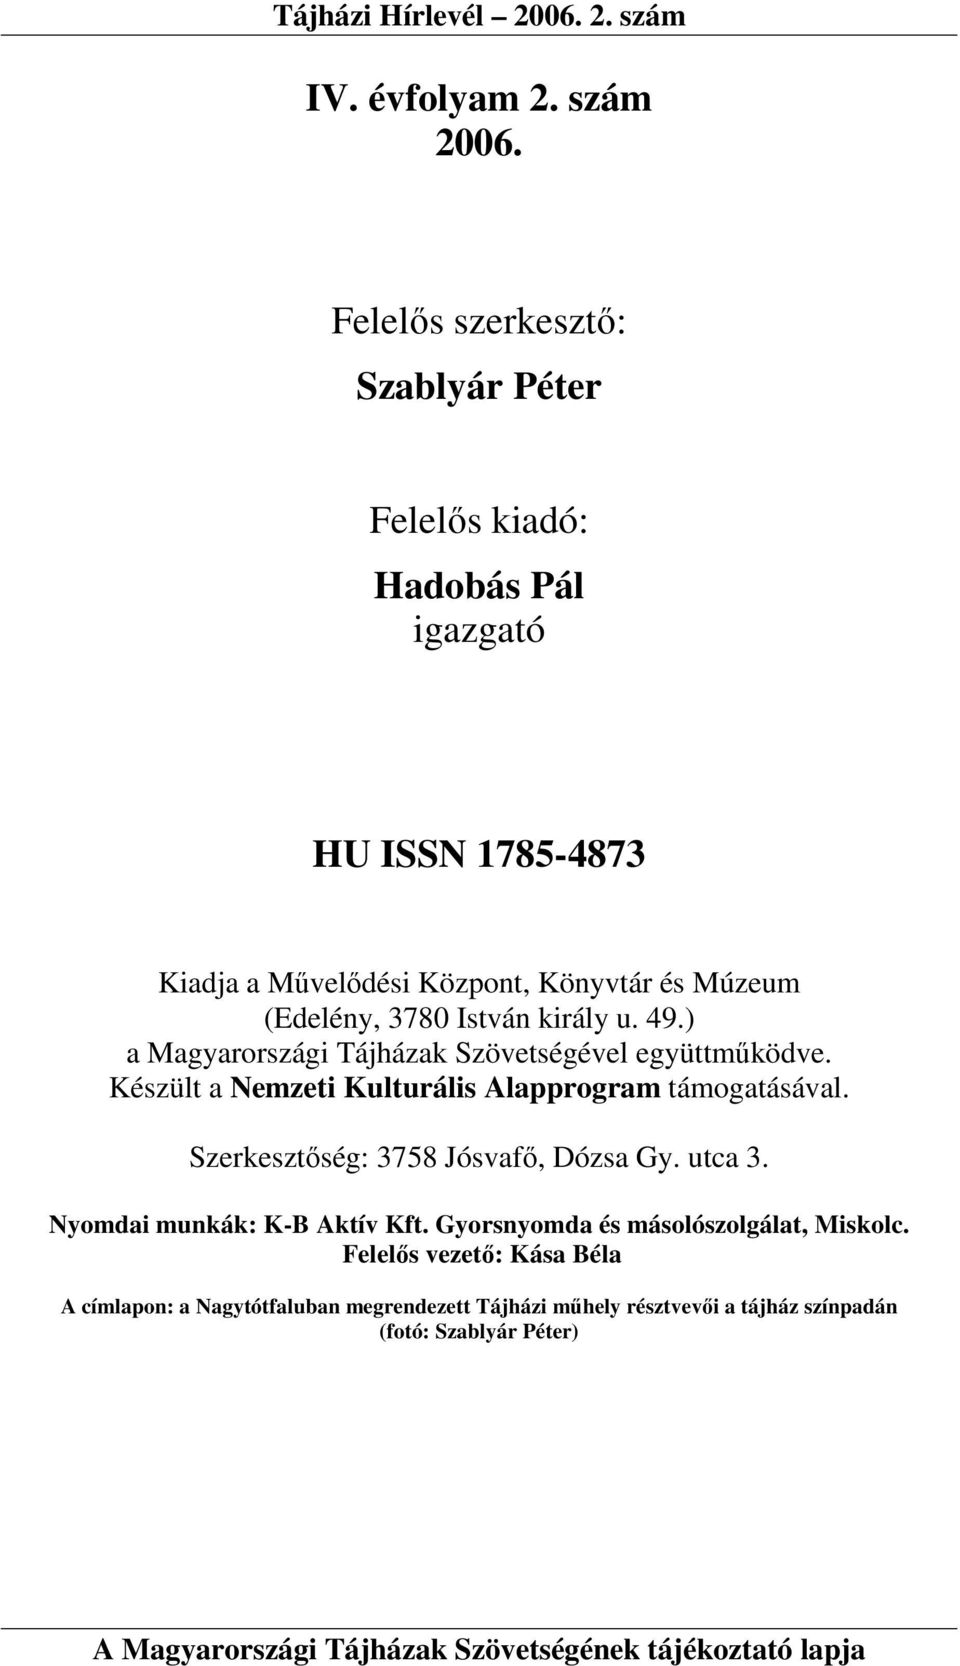 (Edelény, 3780 István király u. 49.) a Magyarországi Tájházak Szövetségével együttmőködve.